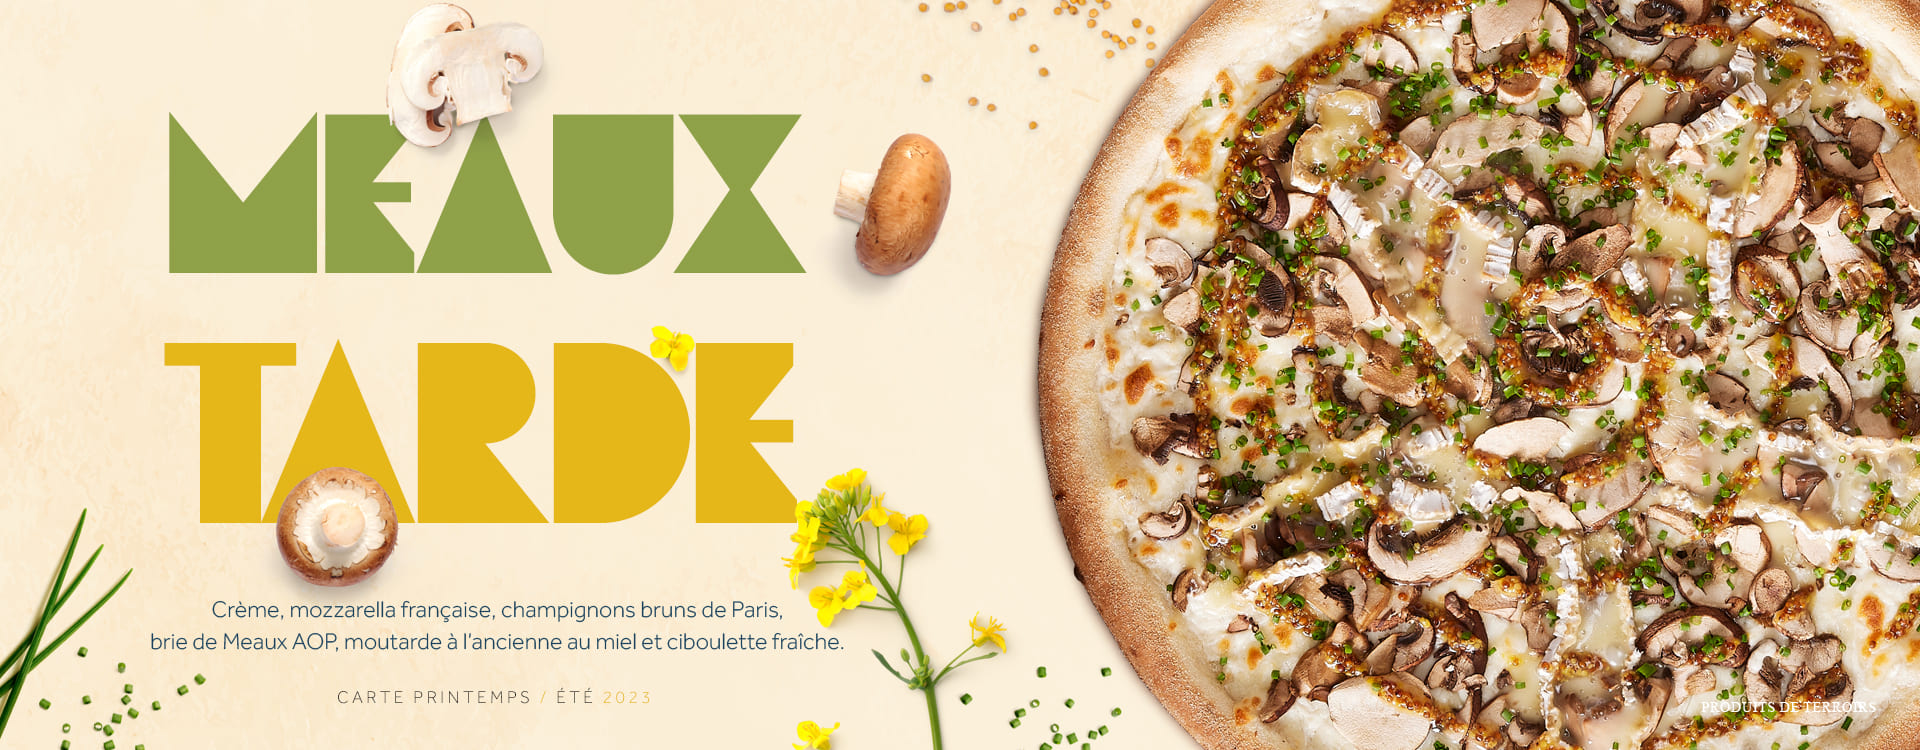 Pizza Meaux'Tarde des restaurants Basilic & Co